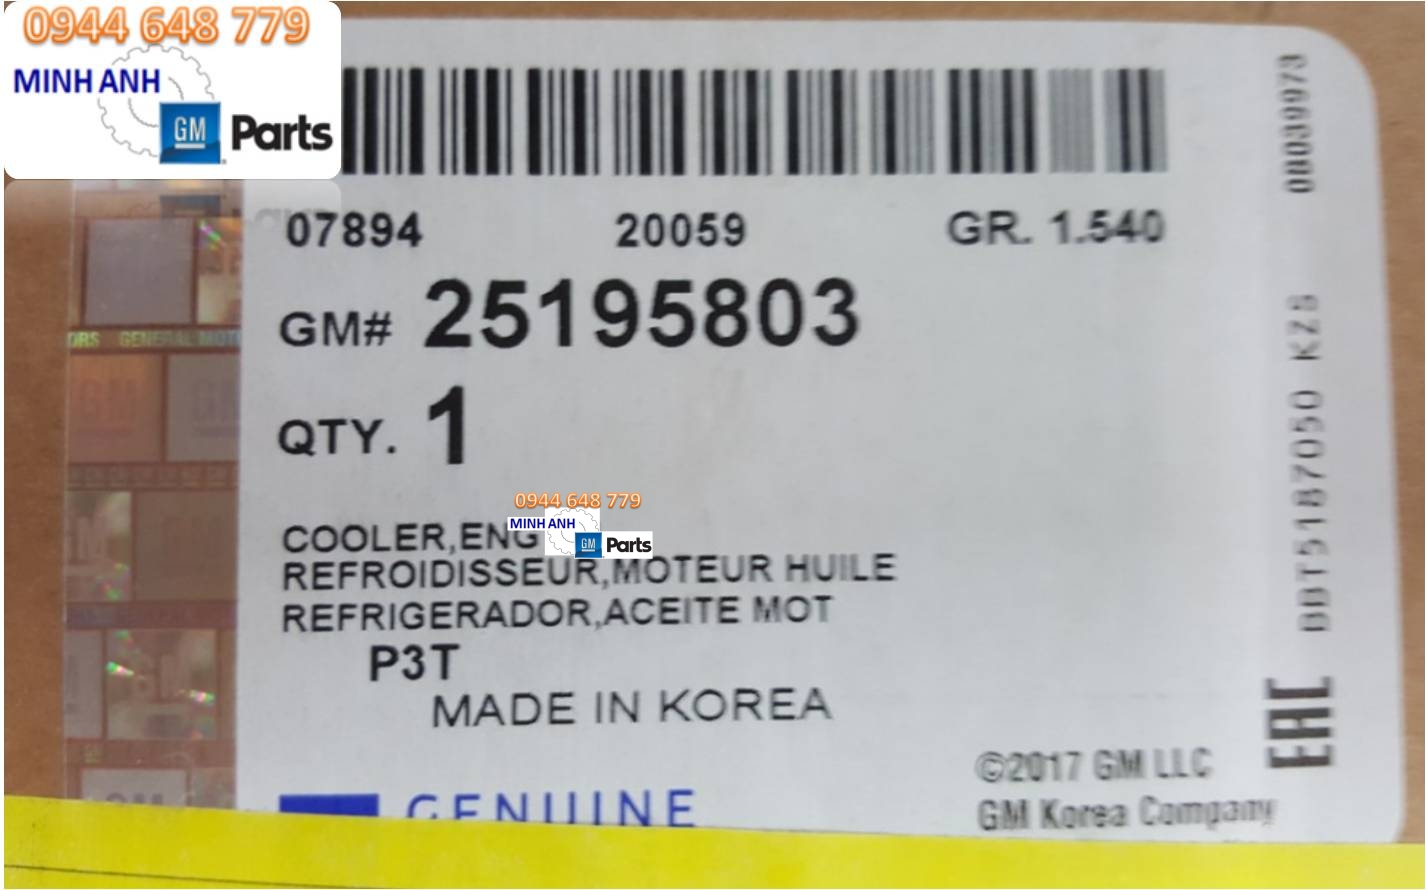 Tên sản phẩm: Két sinh hàn Cruze chính hãng GMMã sản phẩm: GM# 25195803Xuất xứ: Nhập khẩu trực tiếp GM Hàn QuốcDùng cho các xe: Cruze 2017Cam kết 